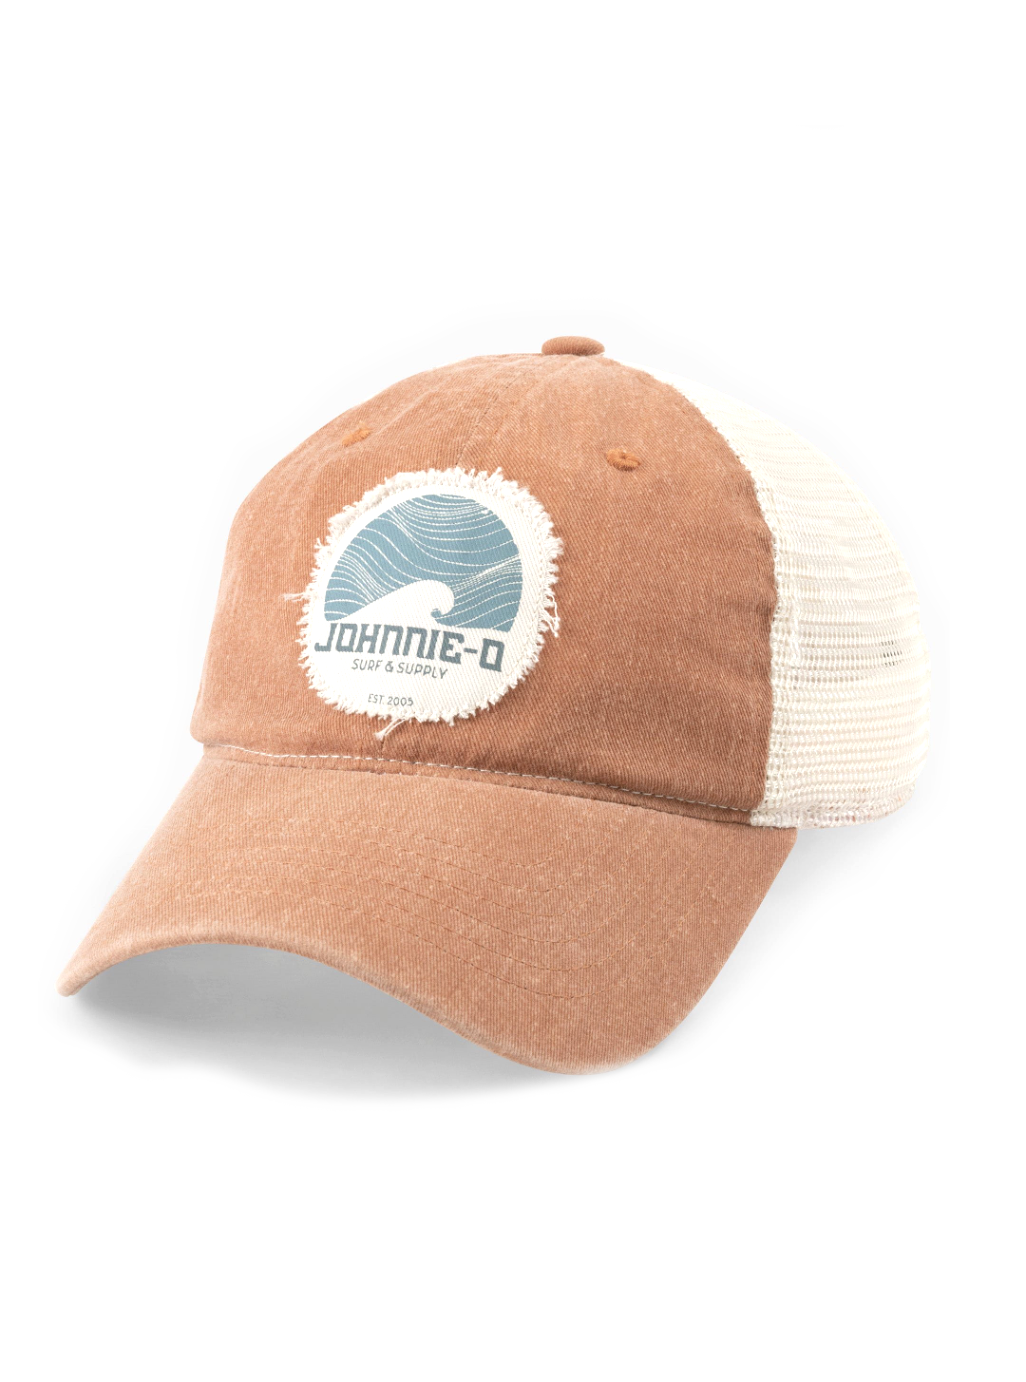 Surf & Supply Trucker Hat Orange